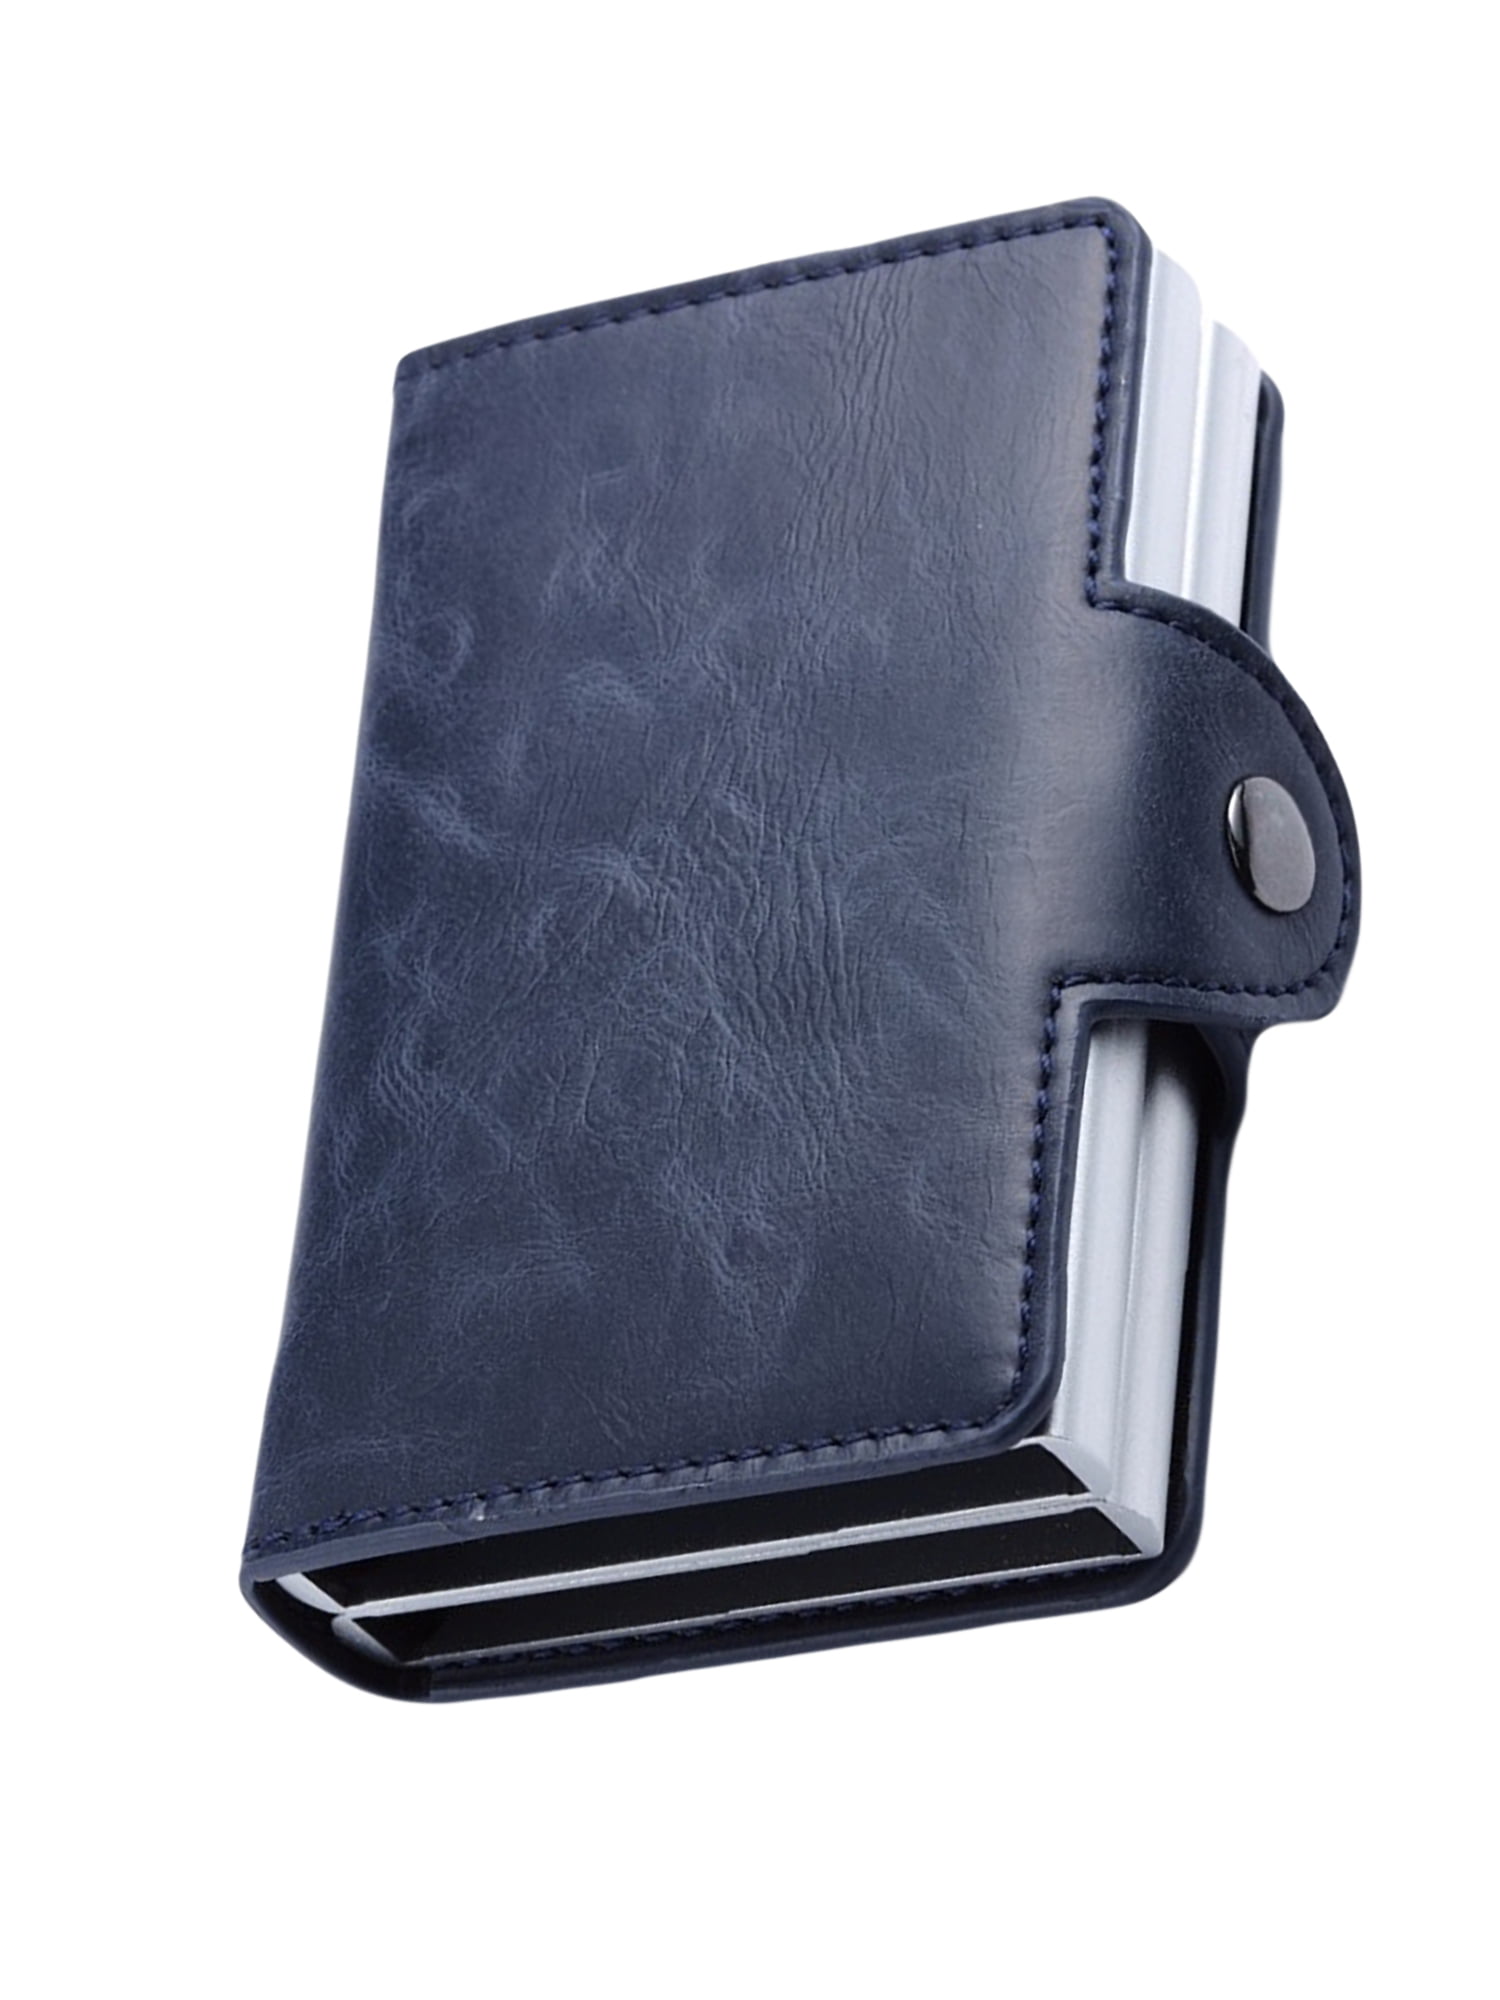 Wallet RFID wallet pop up twin wallet pop-up card holder aluminium wallet cards 